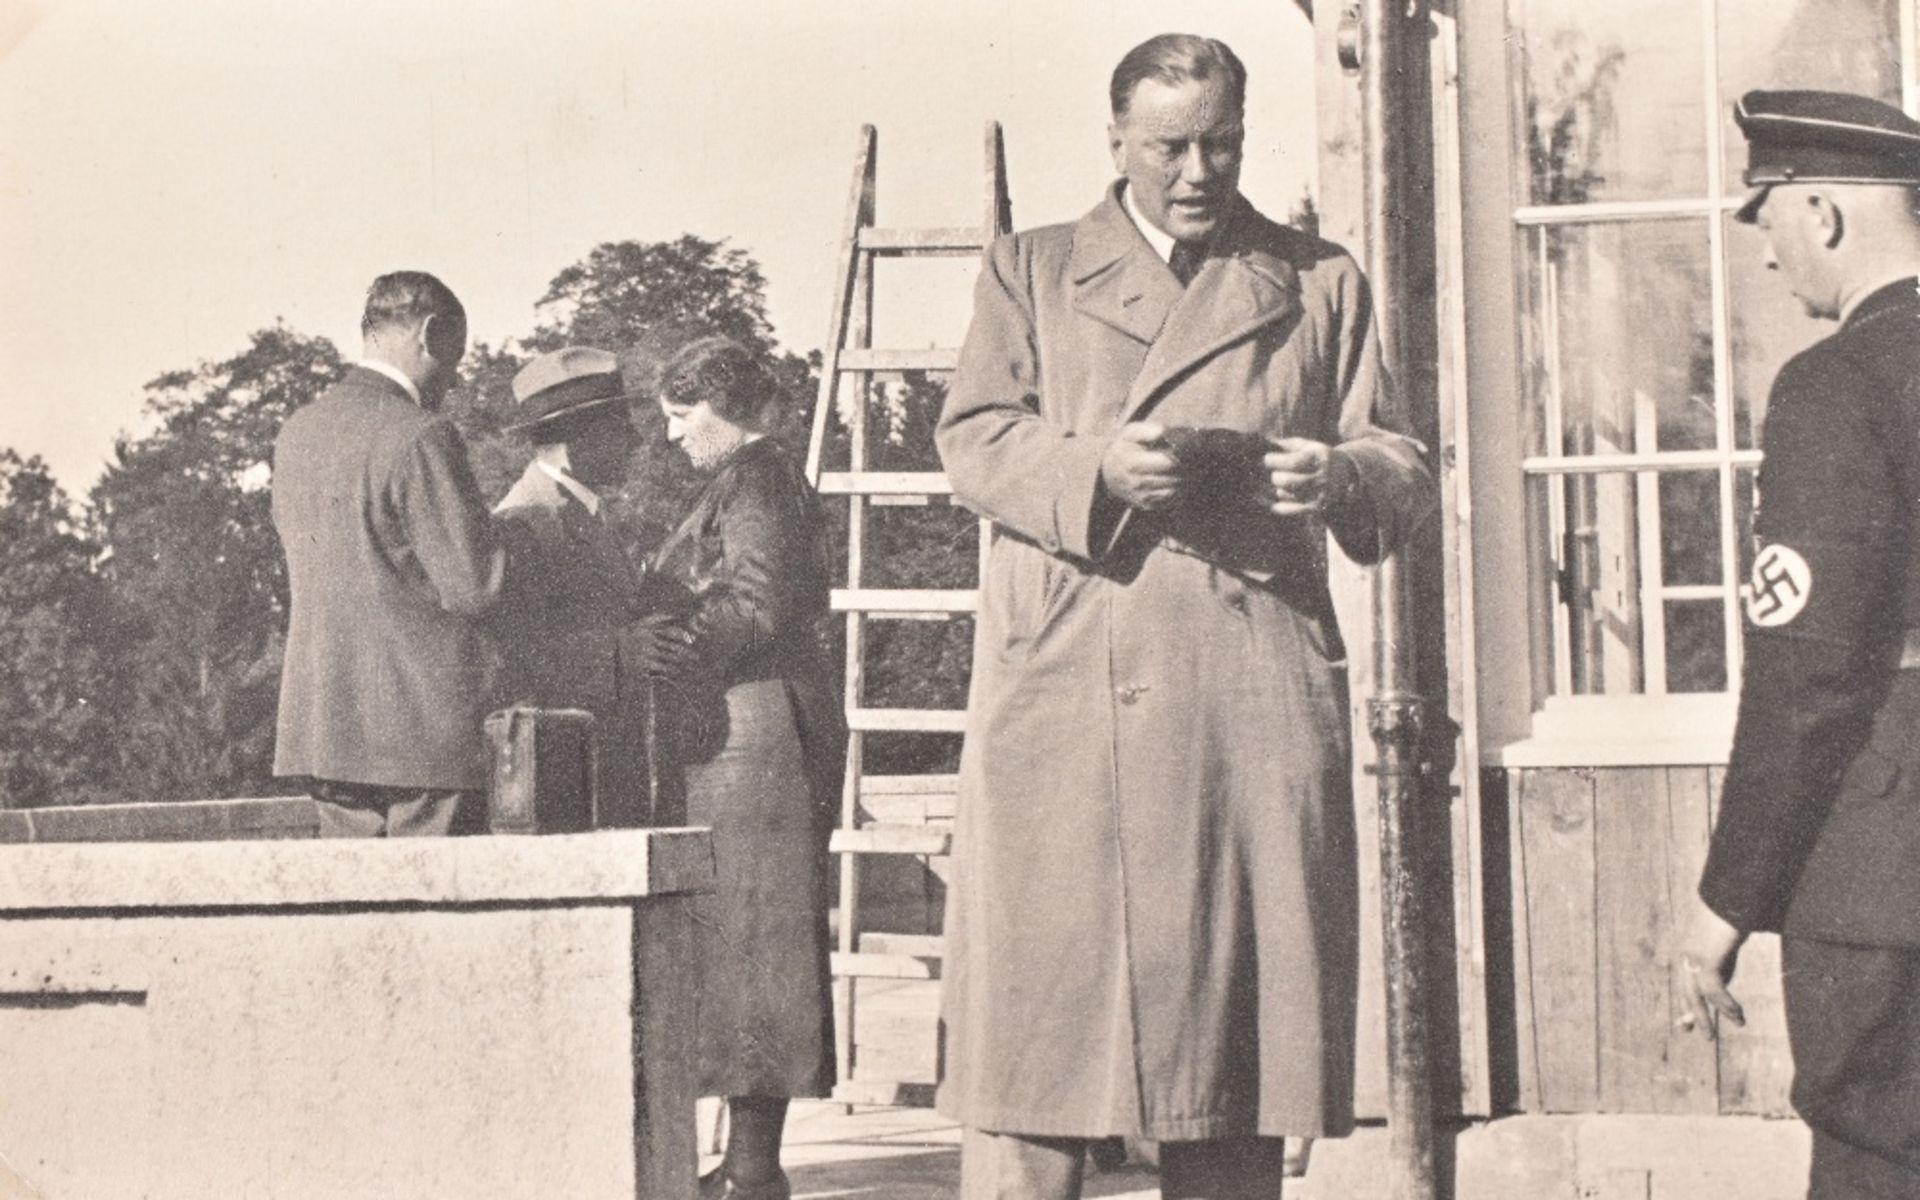 Herman Goering Family Archive – Signed Photographs of Adolf Hitler and Dr Joseph Goebbels - Bild 5 aus 7